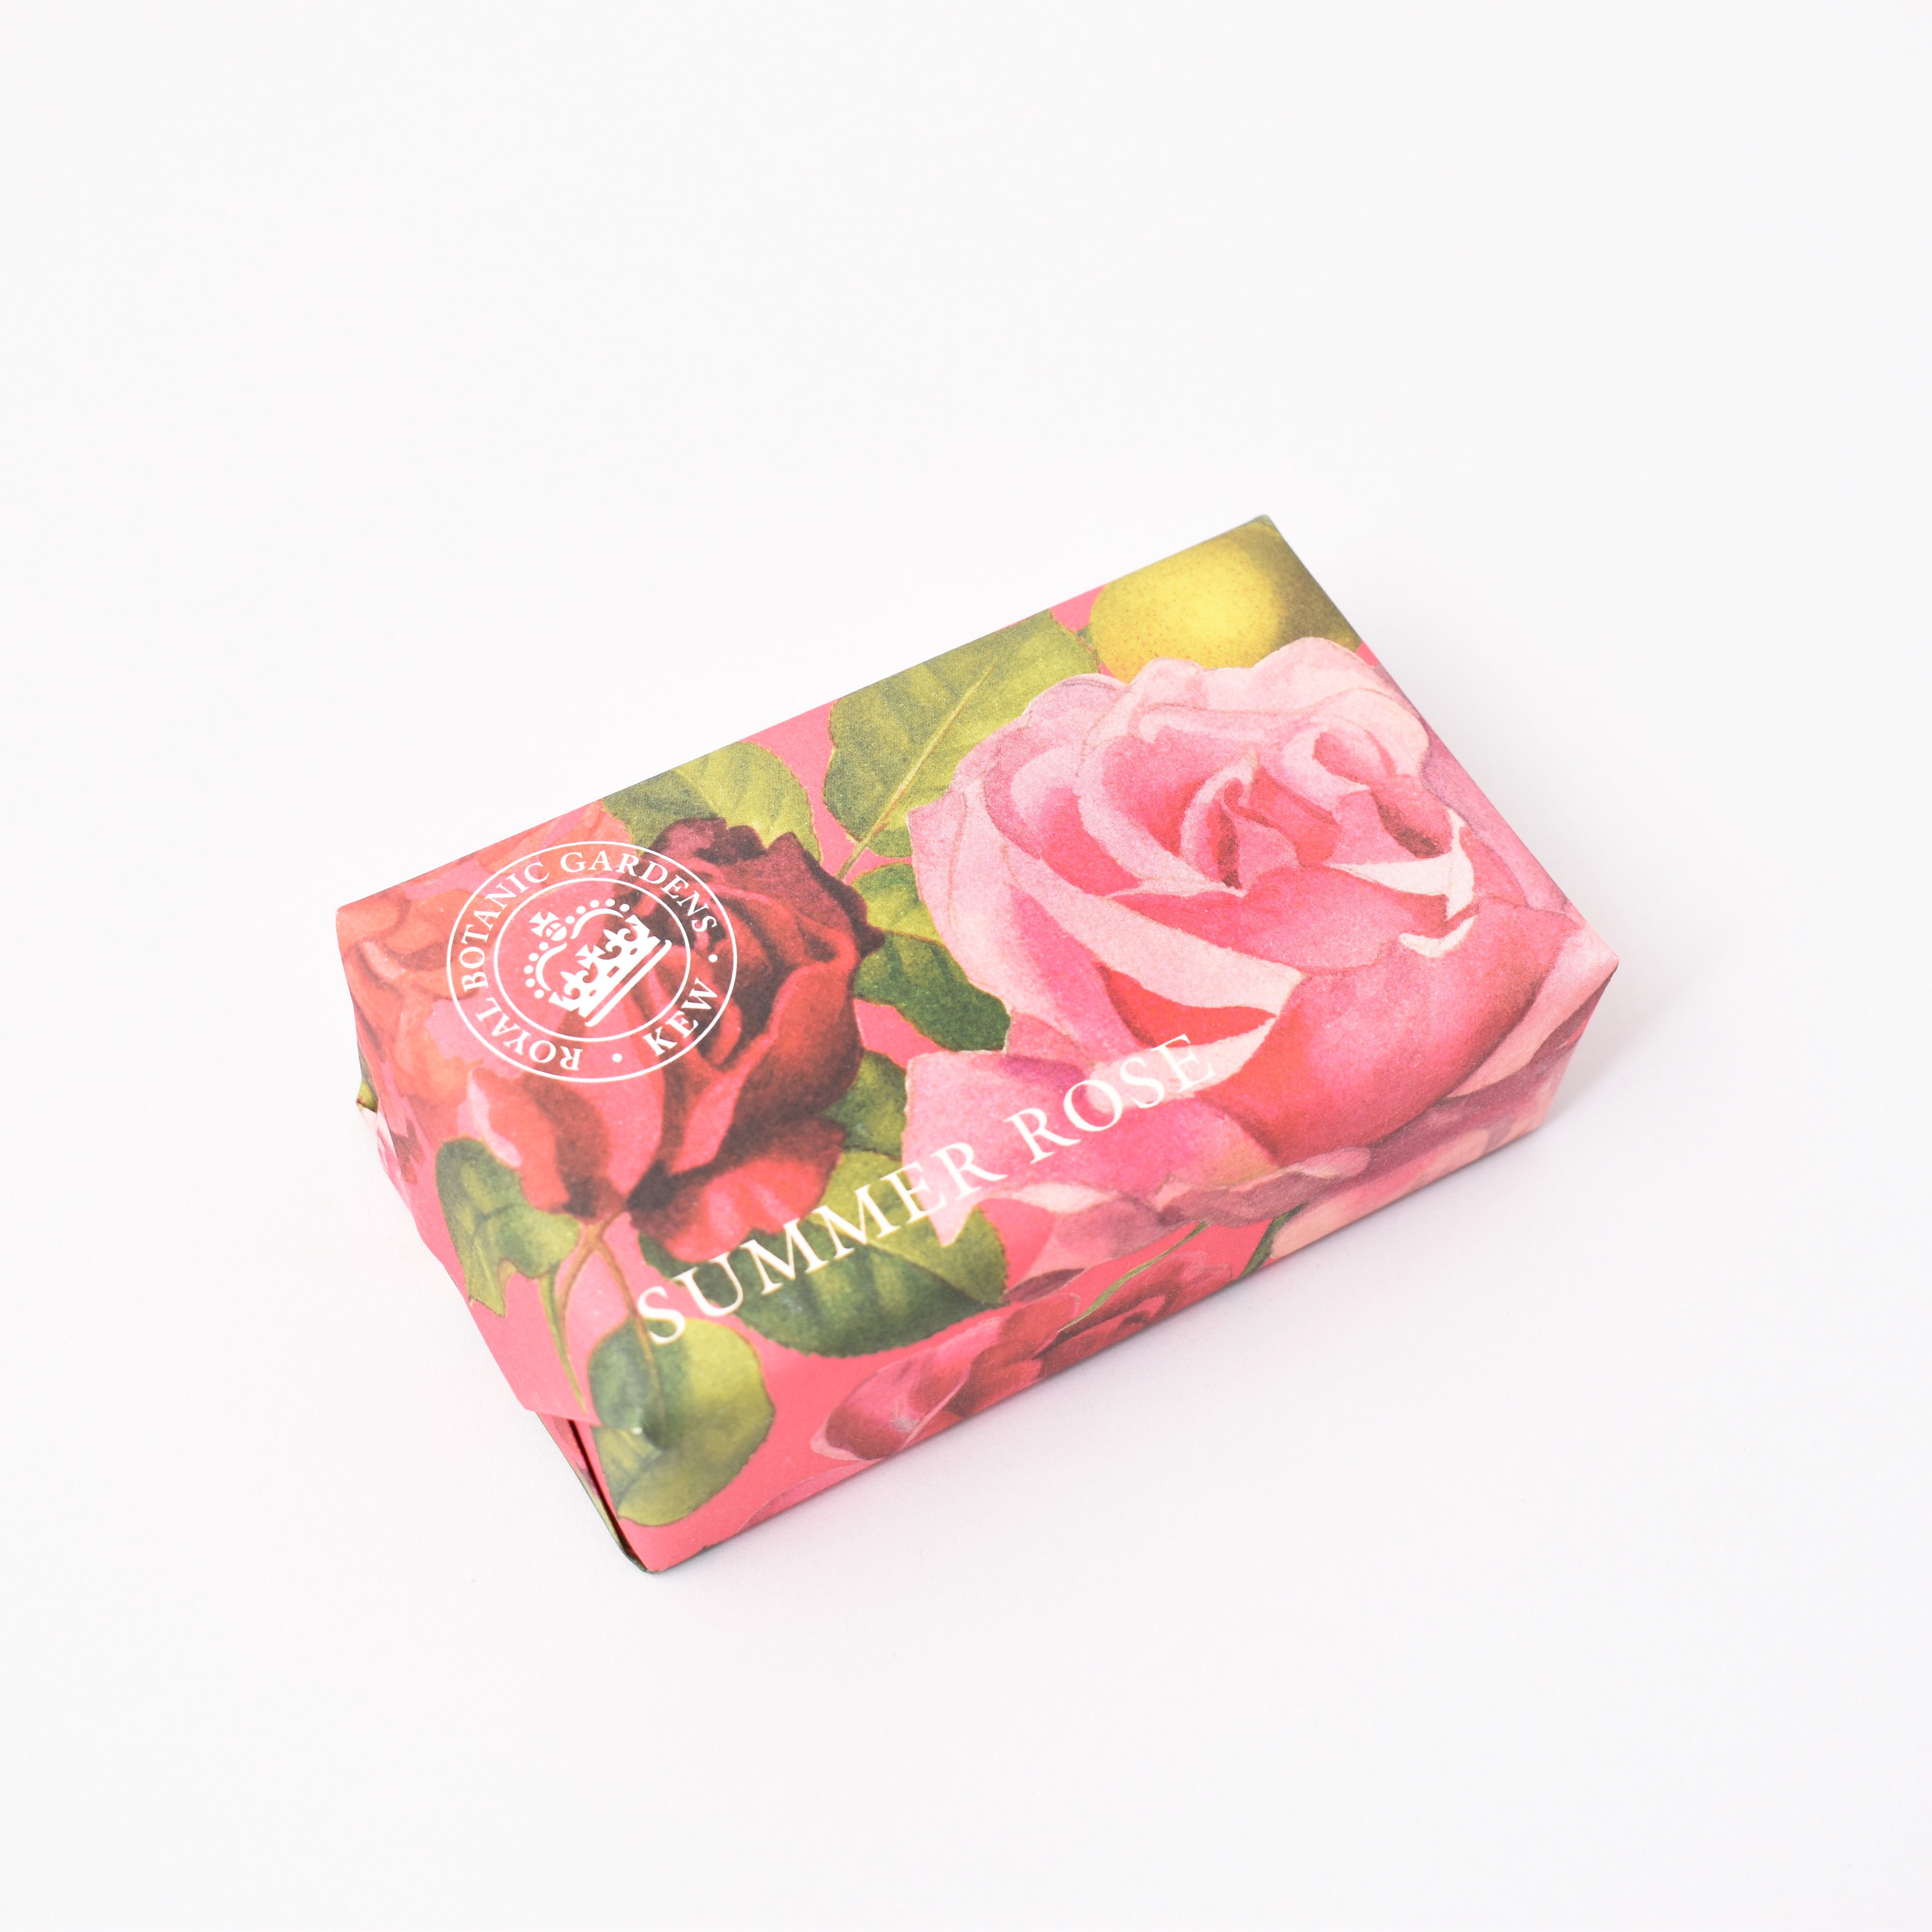 Tvål förpackad i papper med rosor på och texten Summer rose